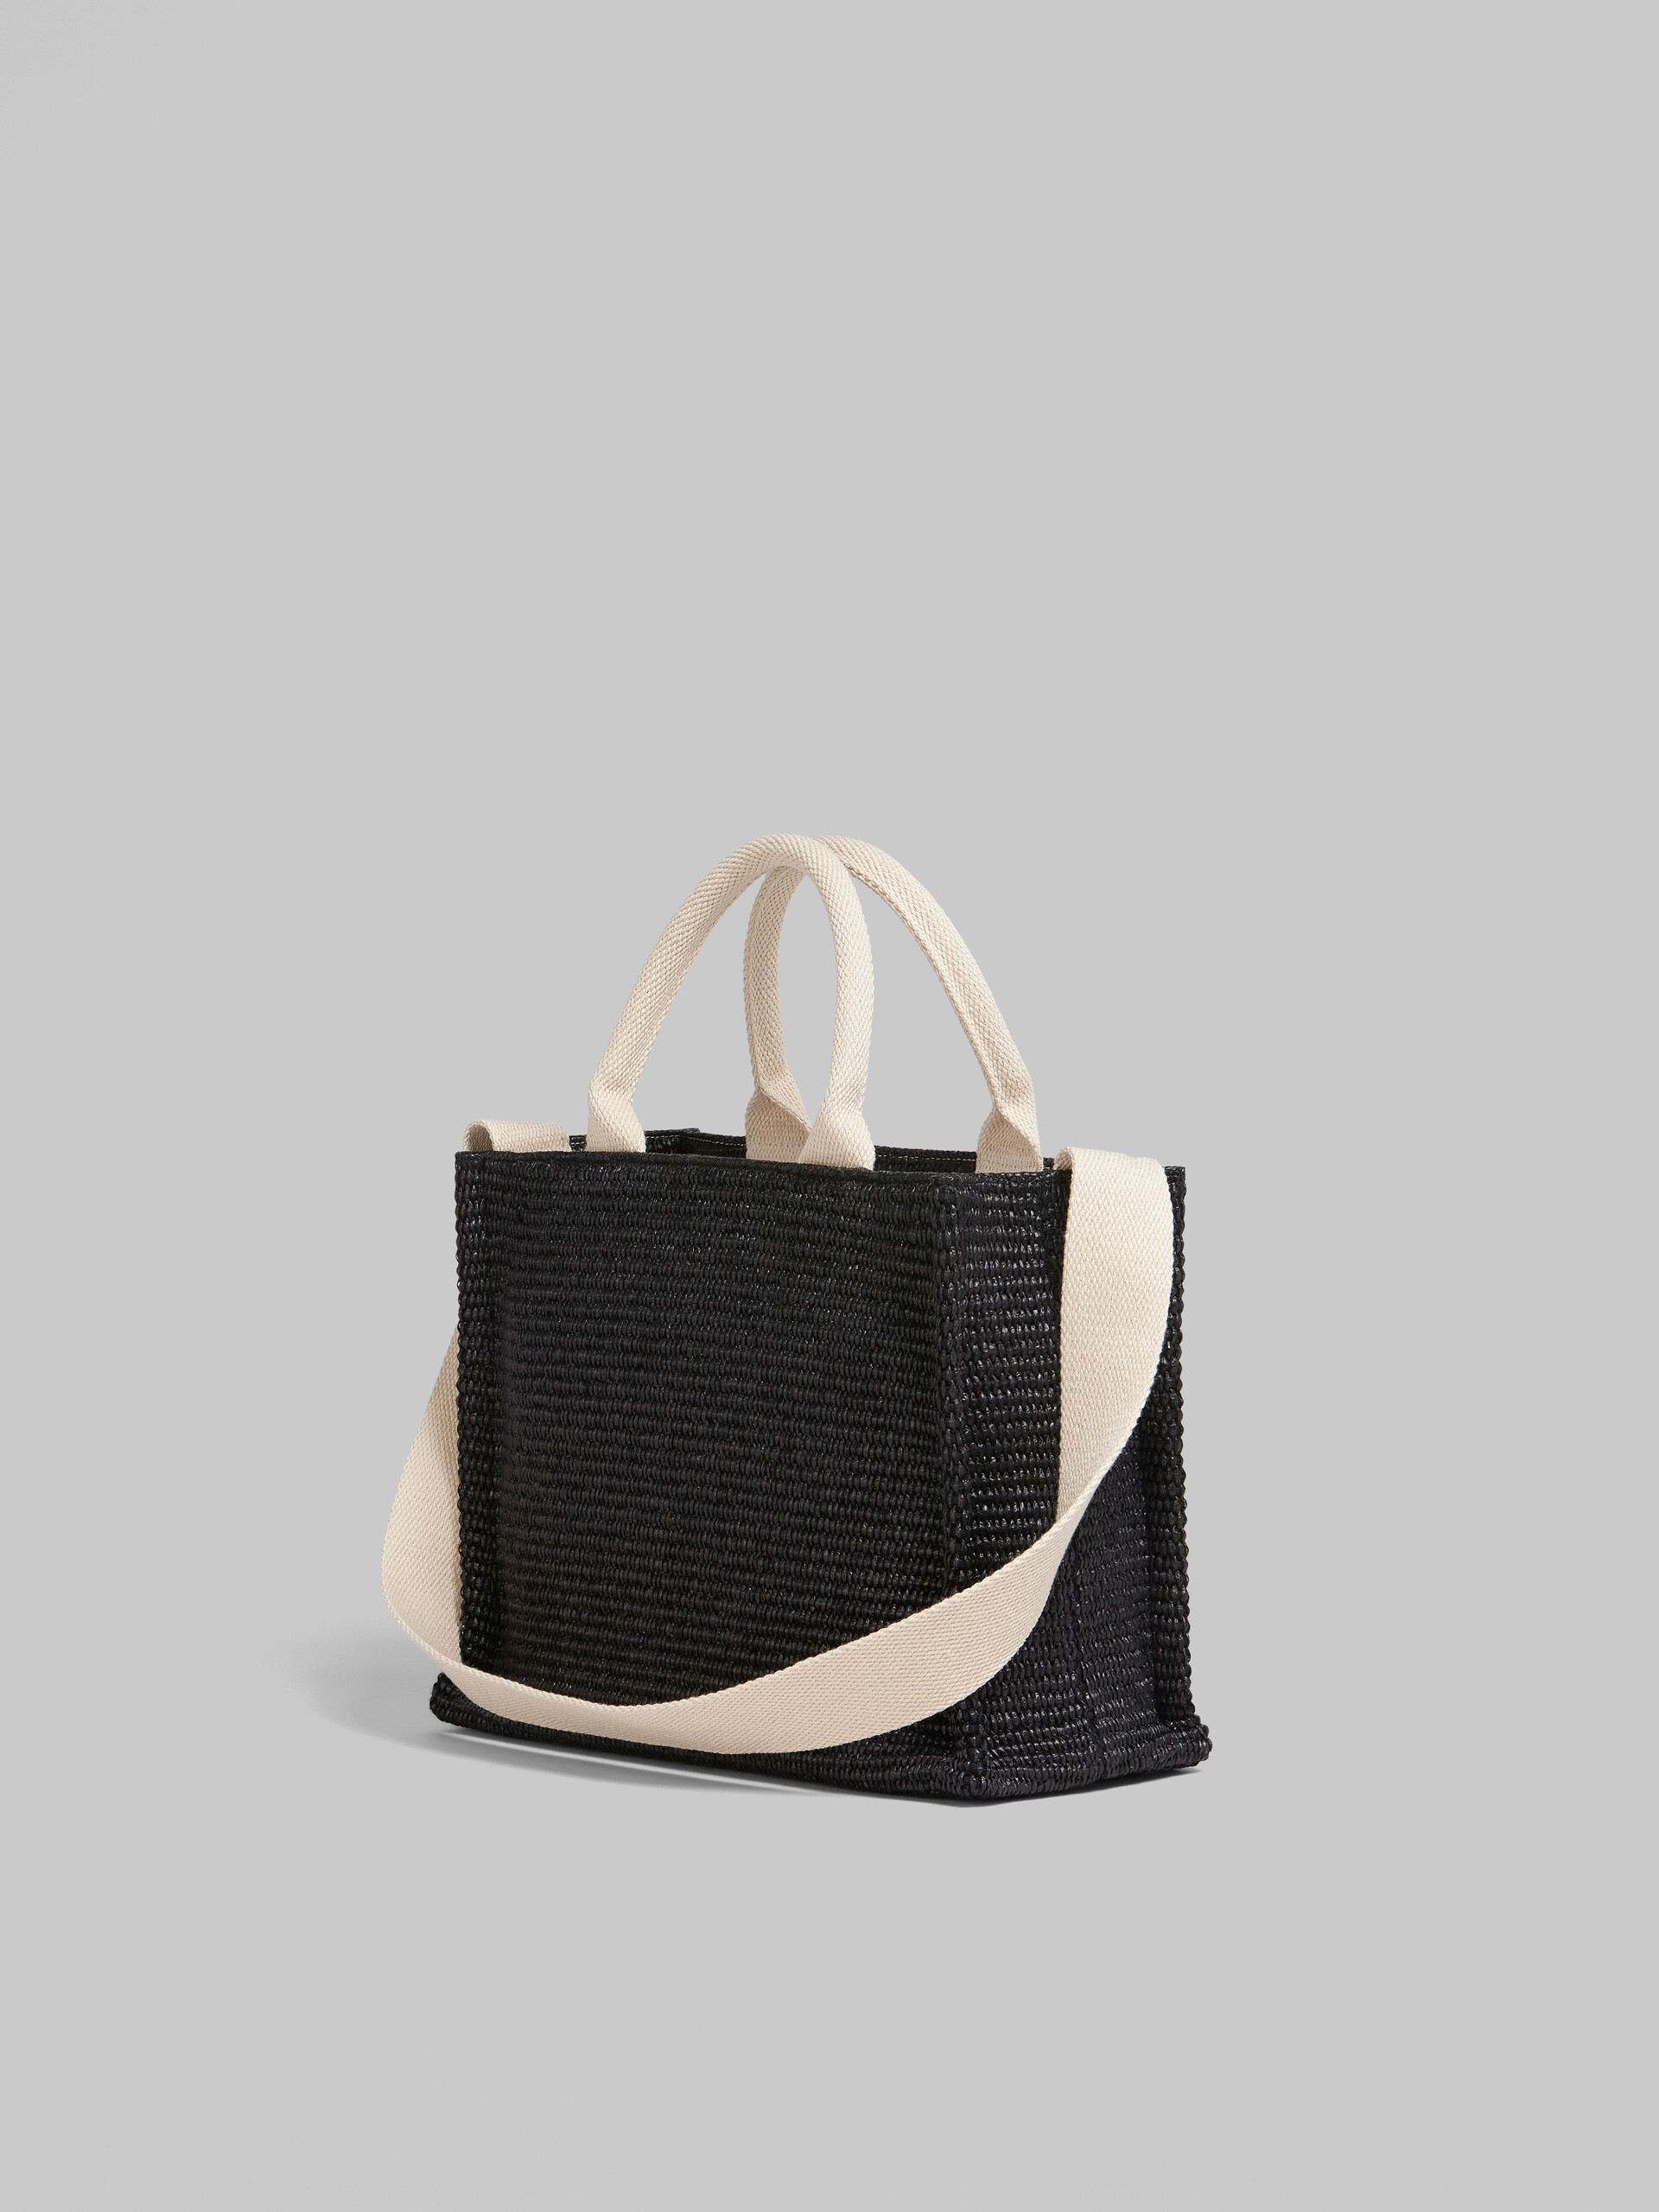 Tote Bag Piccola in tessuto effetto rafia lilla - Borse shopping - Image 3